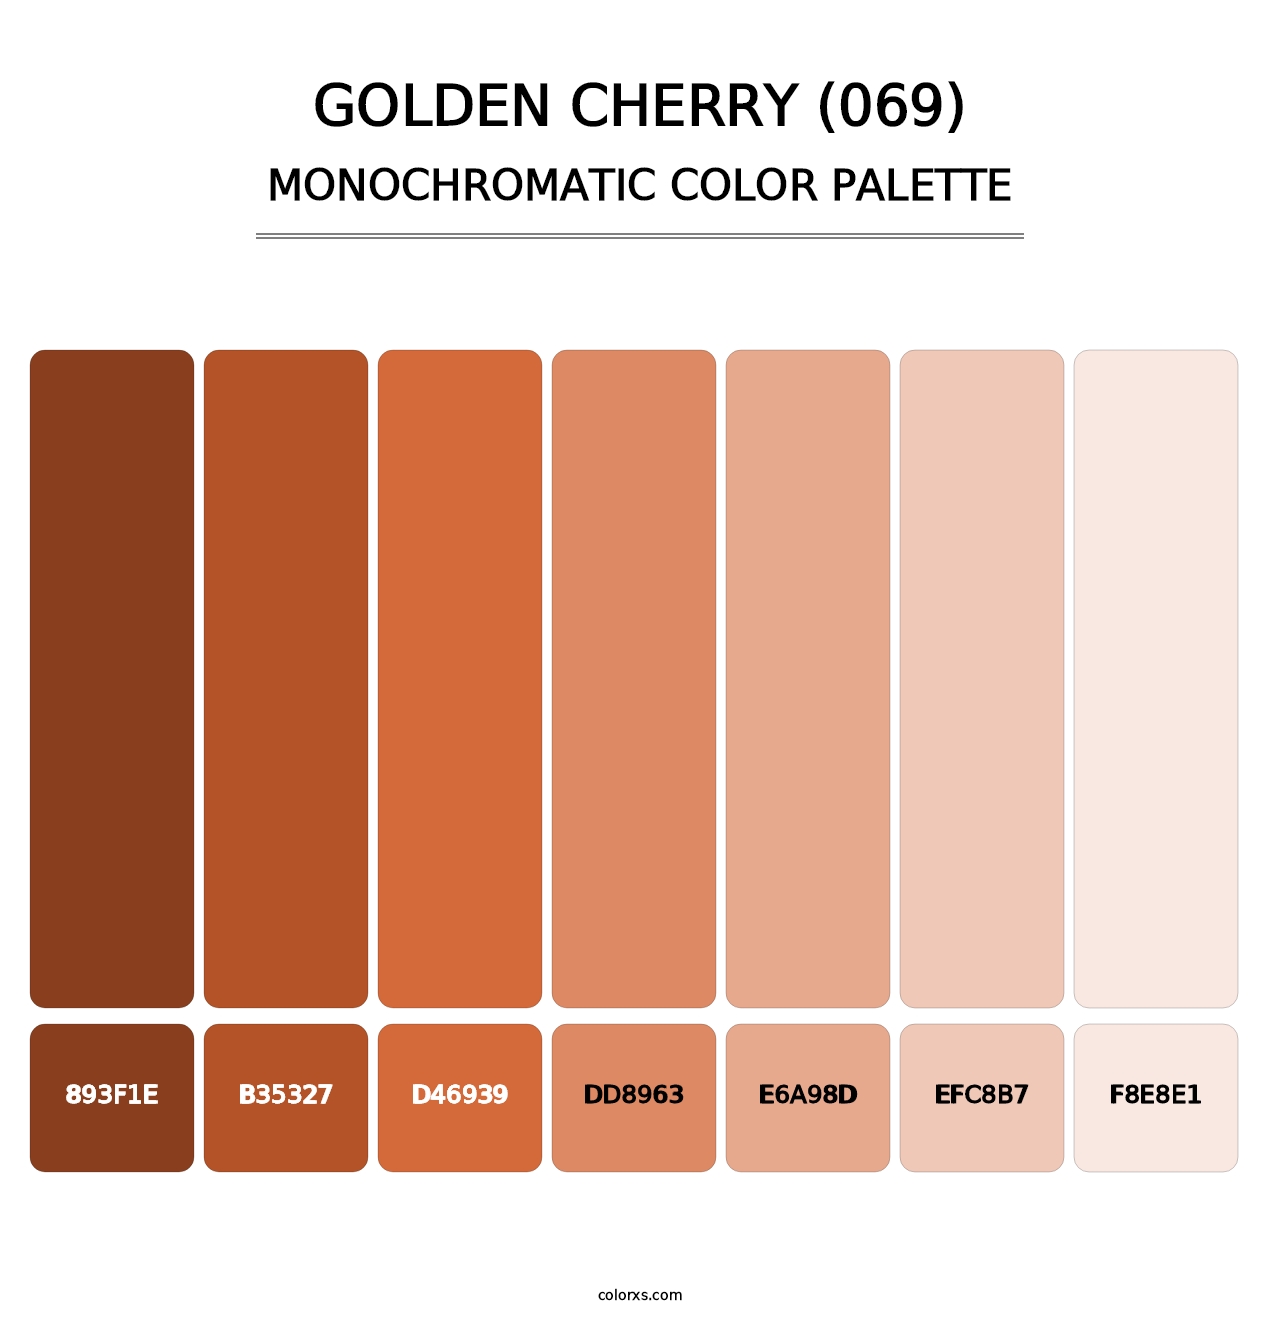 Golden Cherry (069) - Monochromatic Color Palette